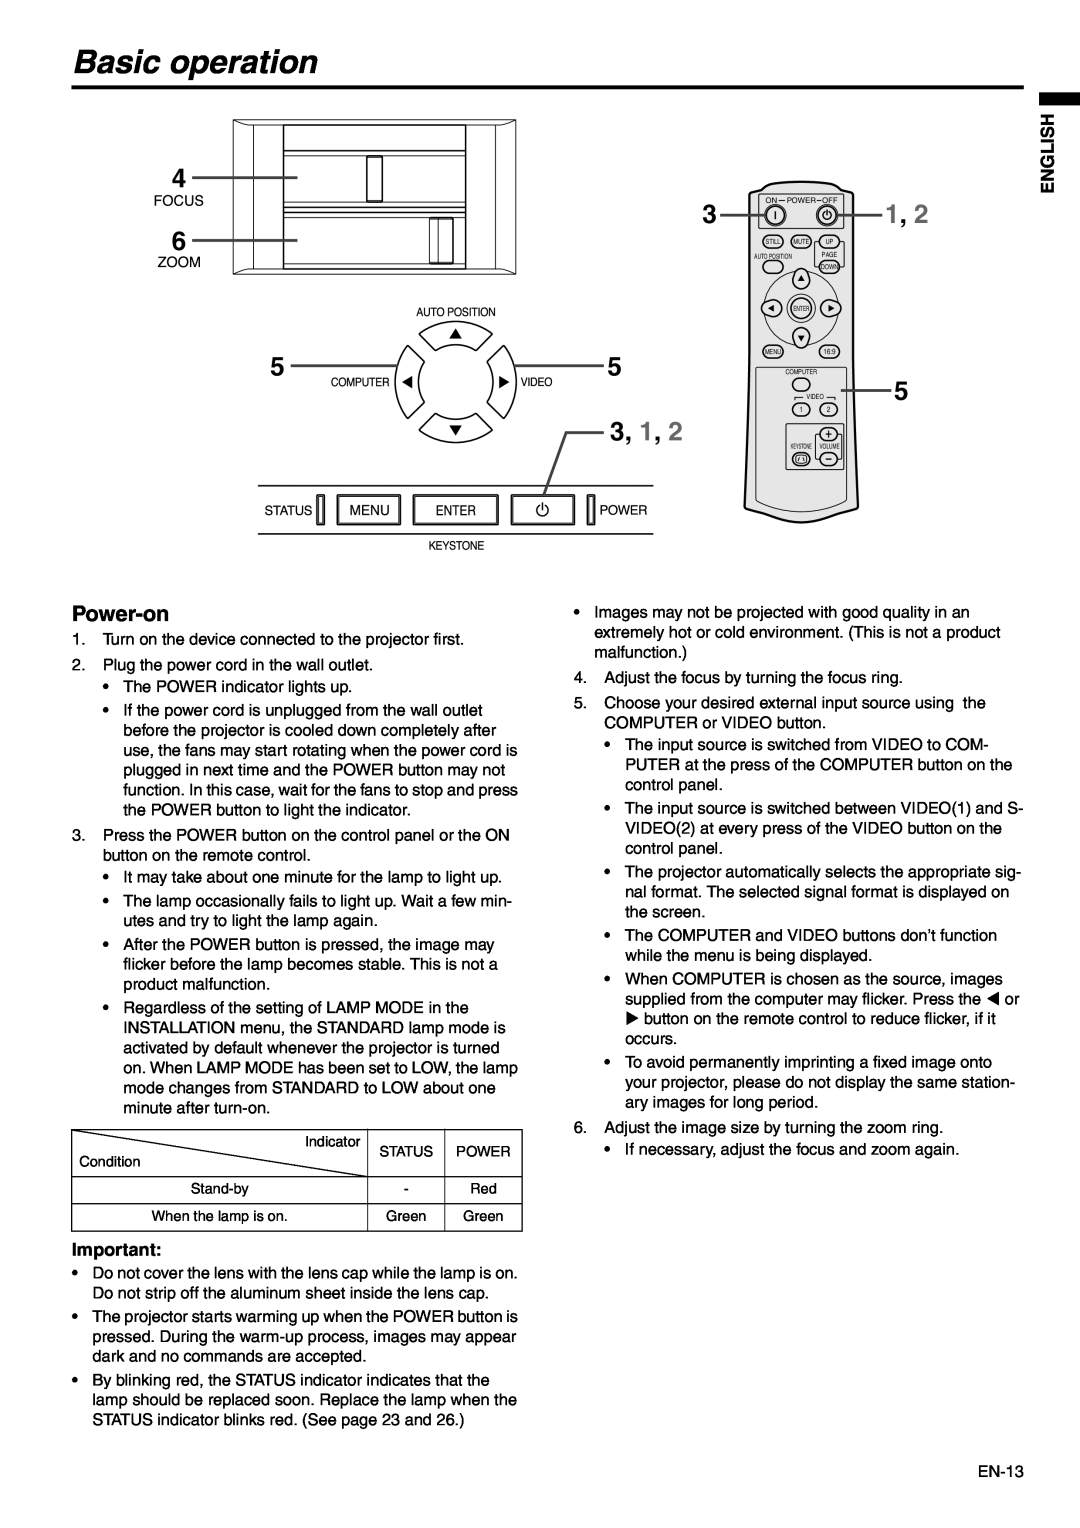 Mitsubishi Electronics SD110, XD110 user manual Basic operation, Power-on, 3, 1, English 